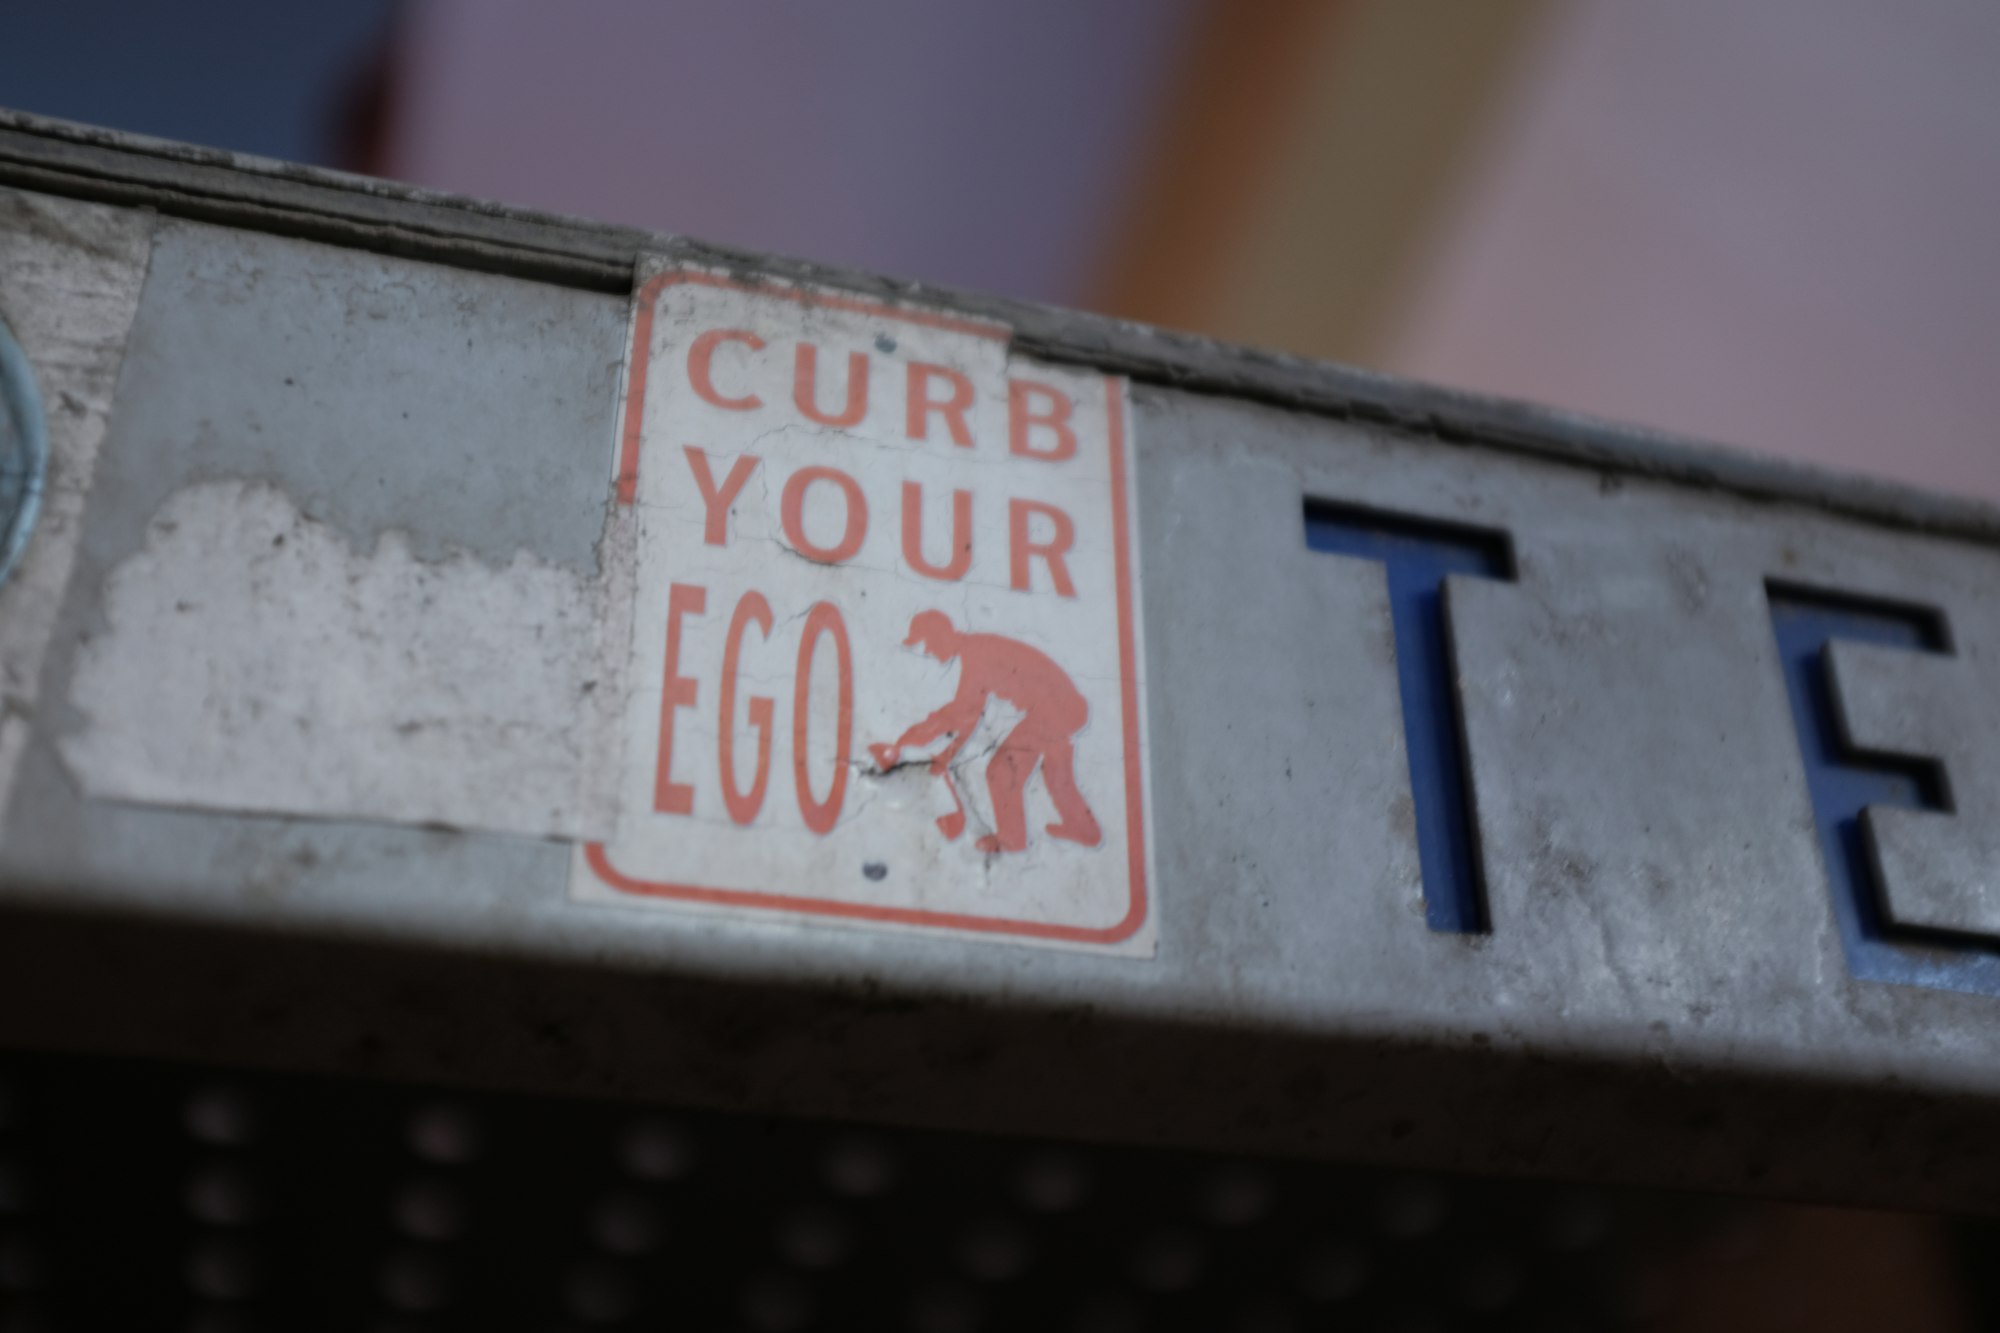 Curb Your Ego Sticker Art